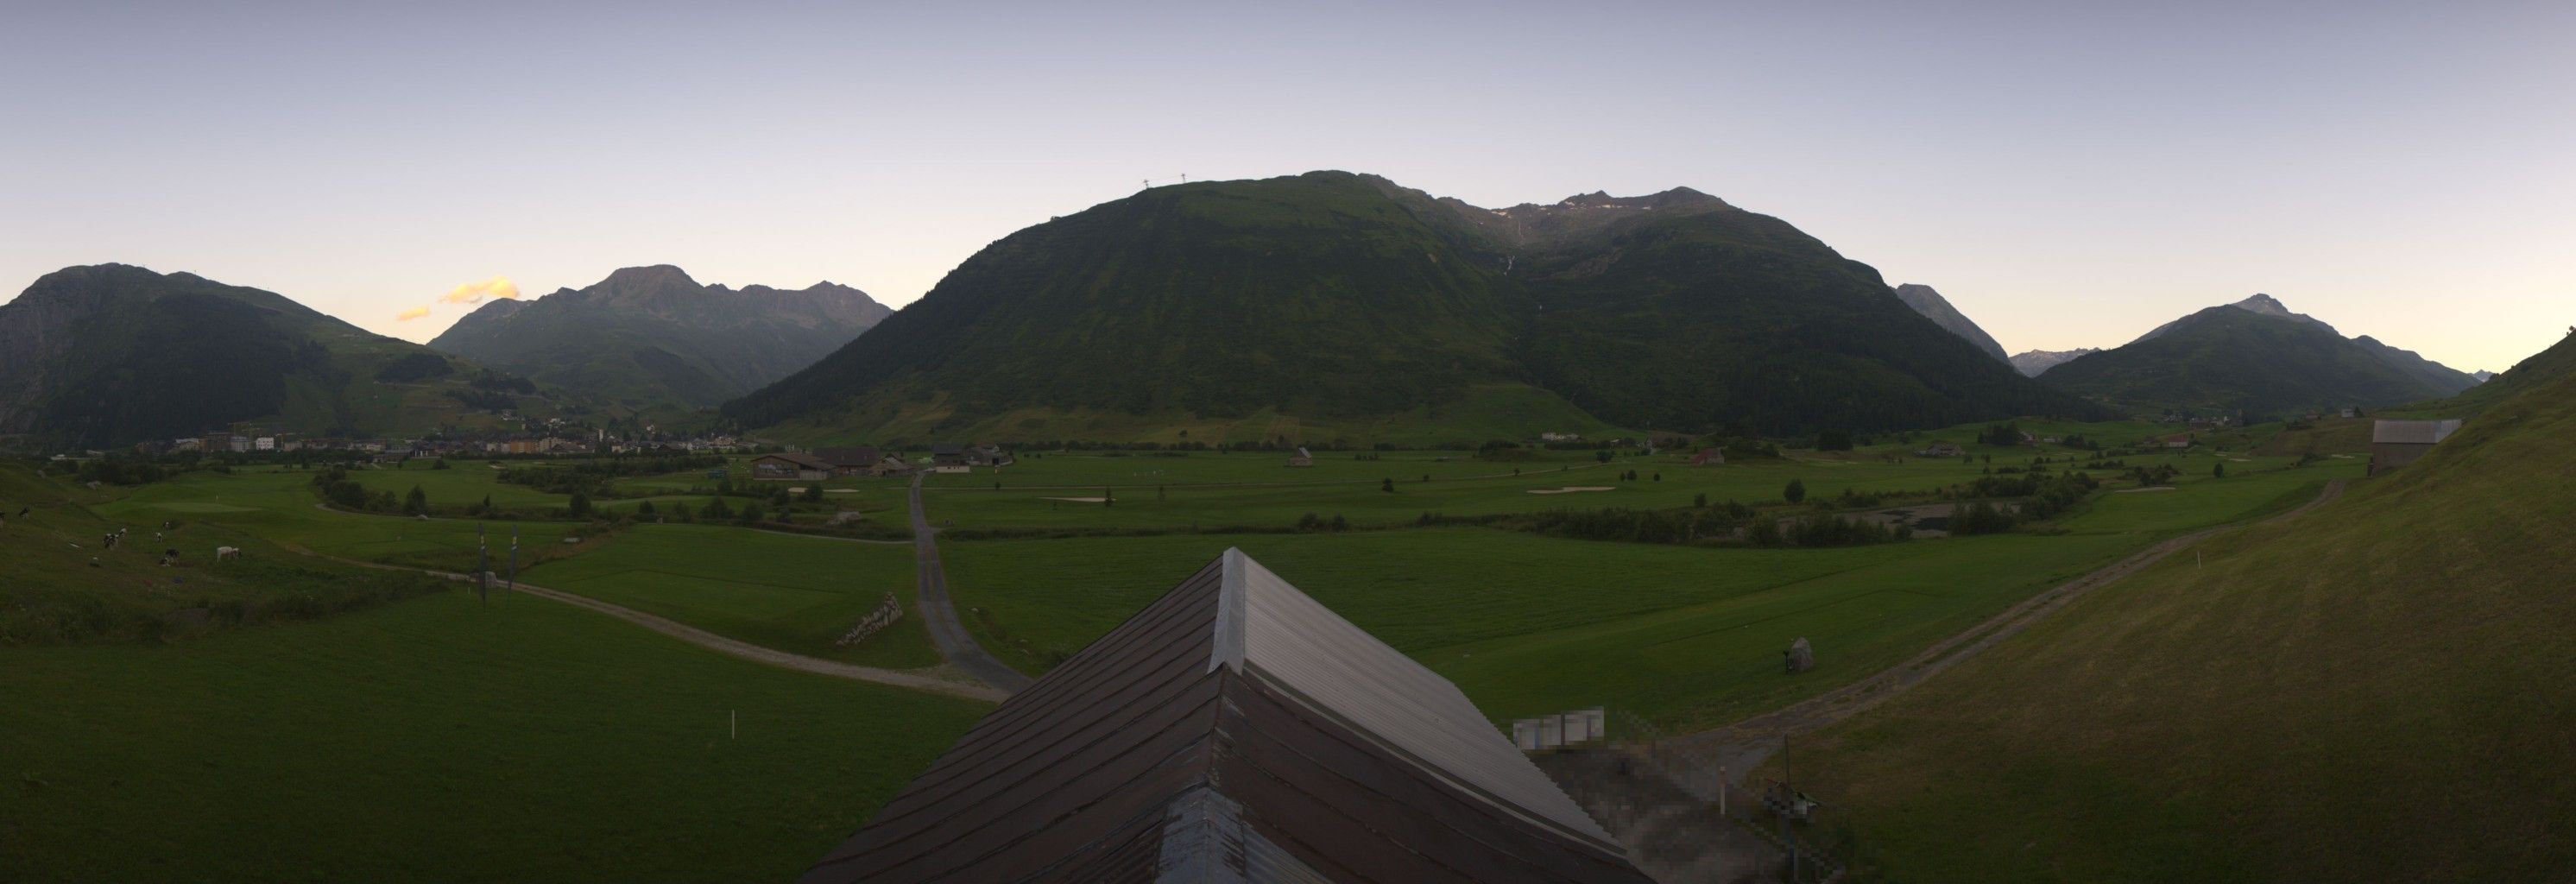 Andermatt: Andermatt Swiss Alps Golf Course